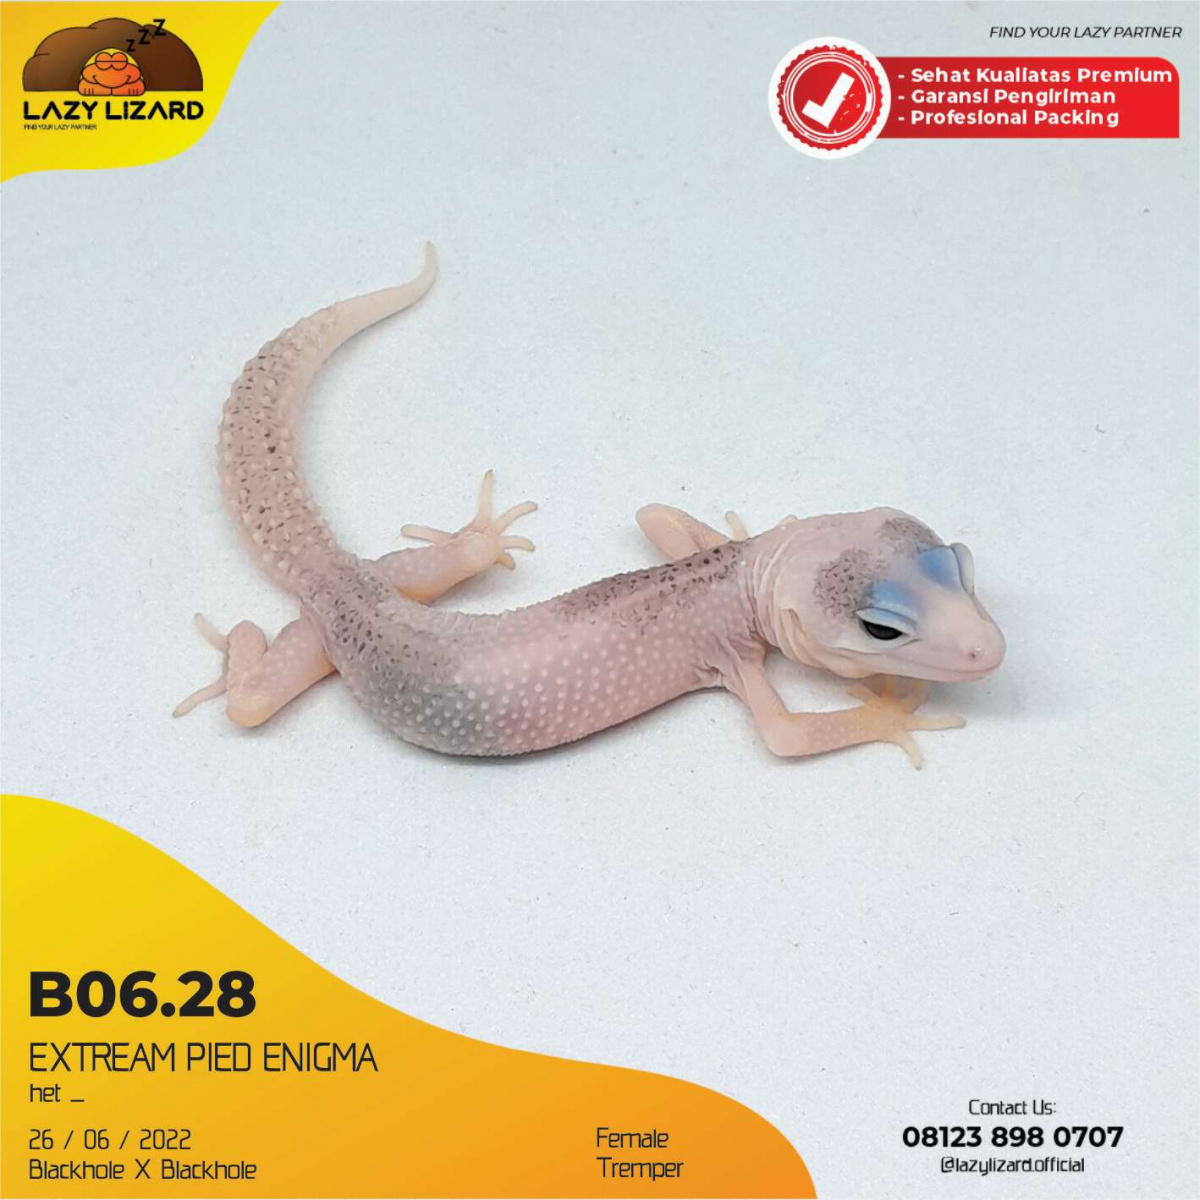 EXTREAM PIED ENIGMA, Leopard Gecko B06.28